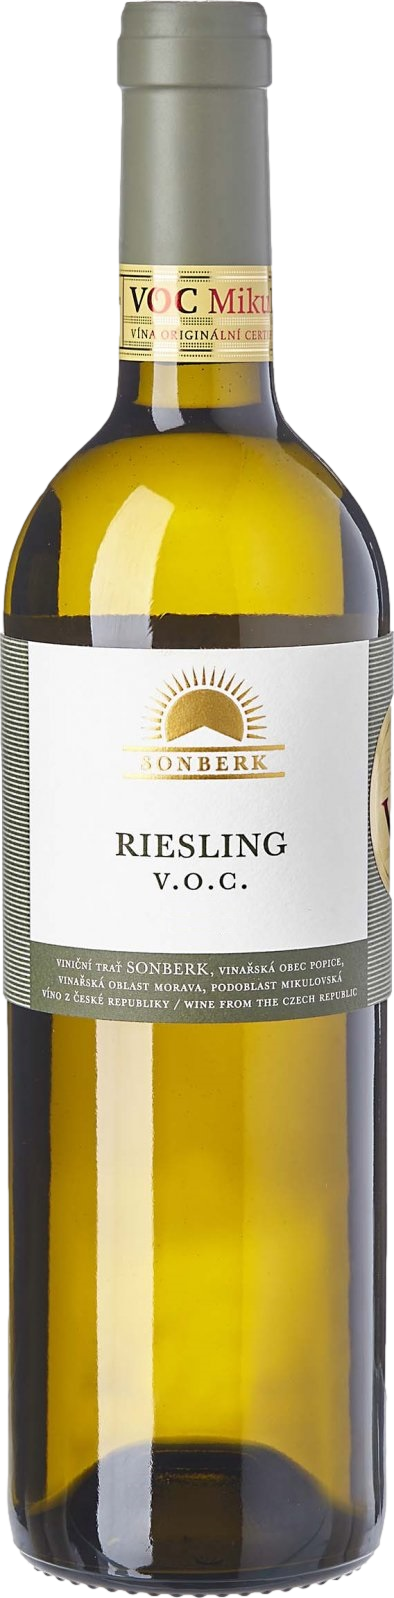 Sonberk Riesling 2020 8594186130979